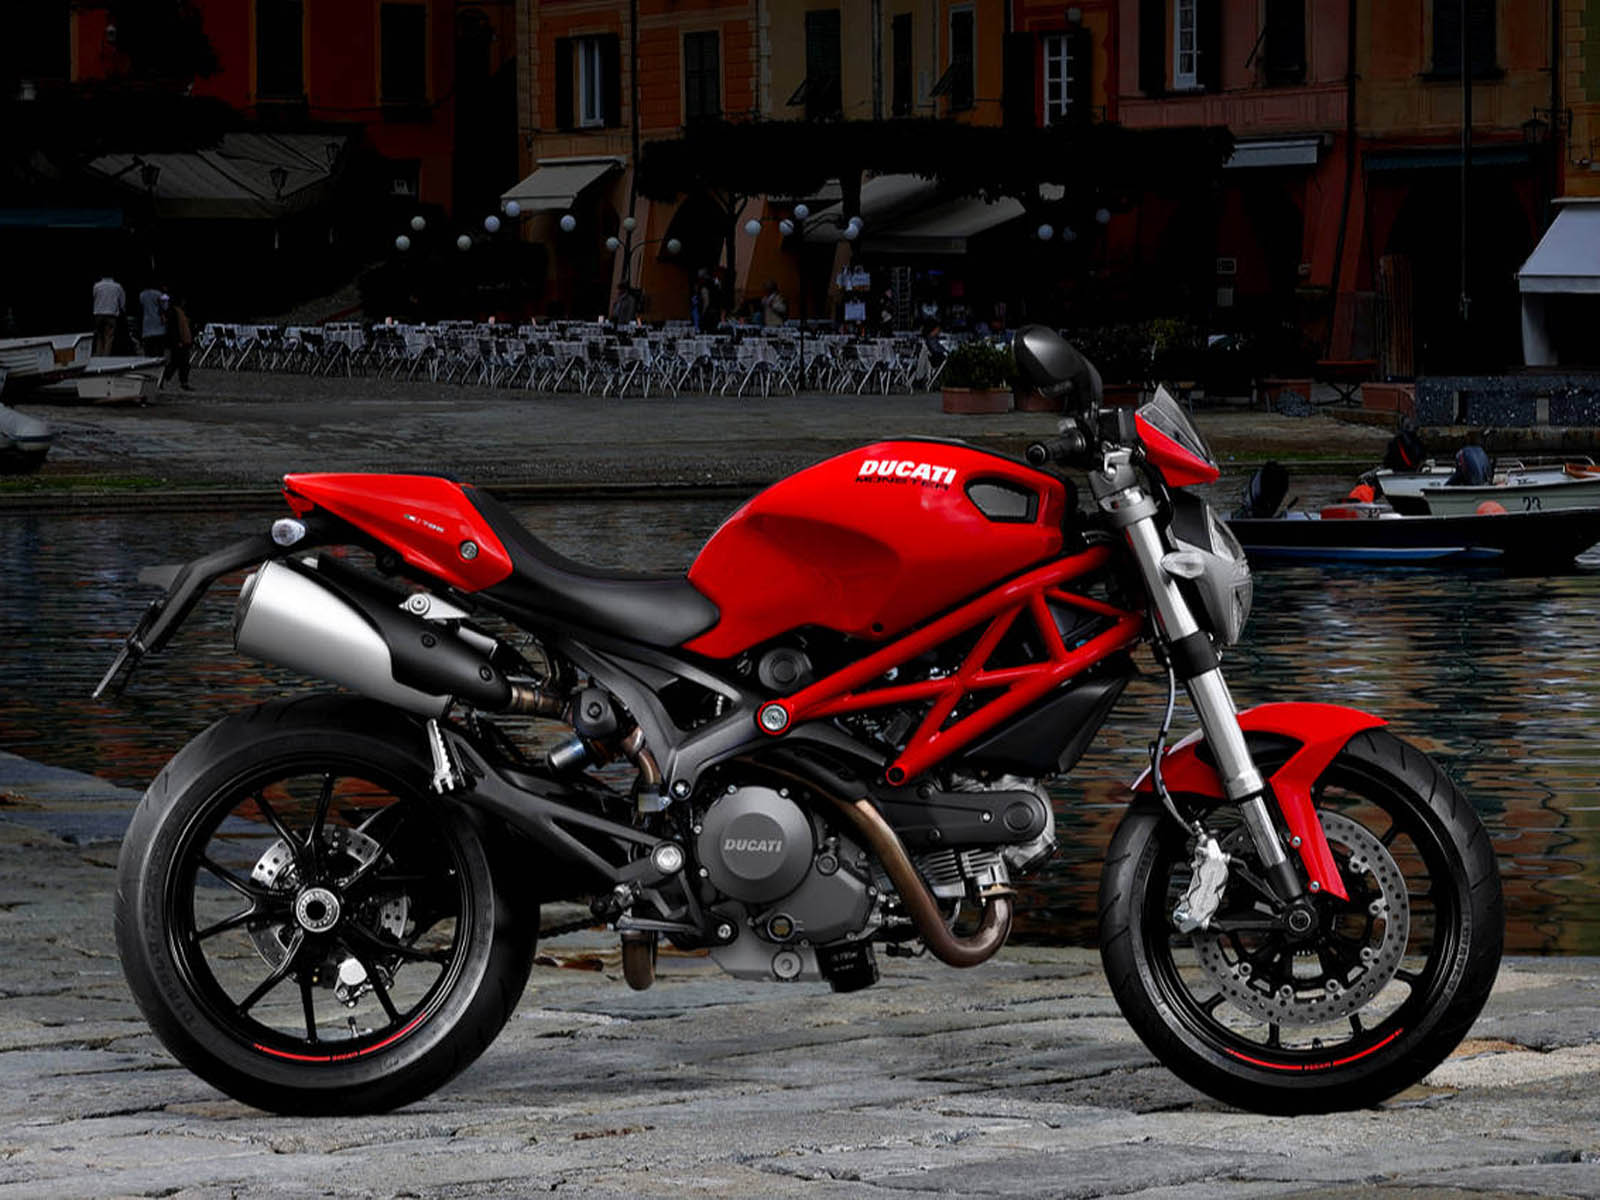 http://4.bp.blogspot.com/-k1MB7zvqGEw/UEWJF5lvteI/AAAAAAAAJDU/SsZDkJ9sfyc/s1600/Ducati+Monster+796+Bike+Wallpapers+7.jpg